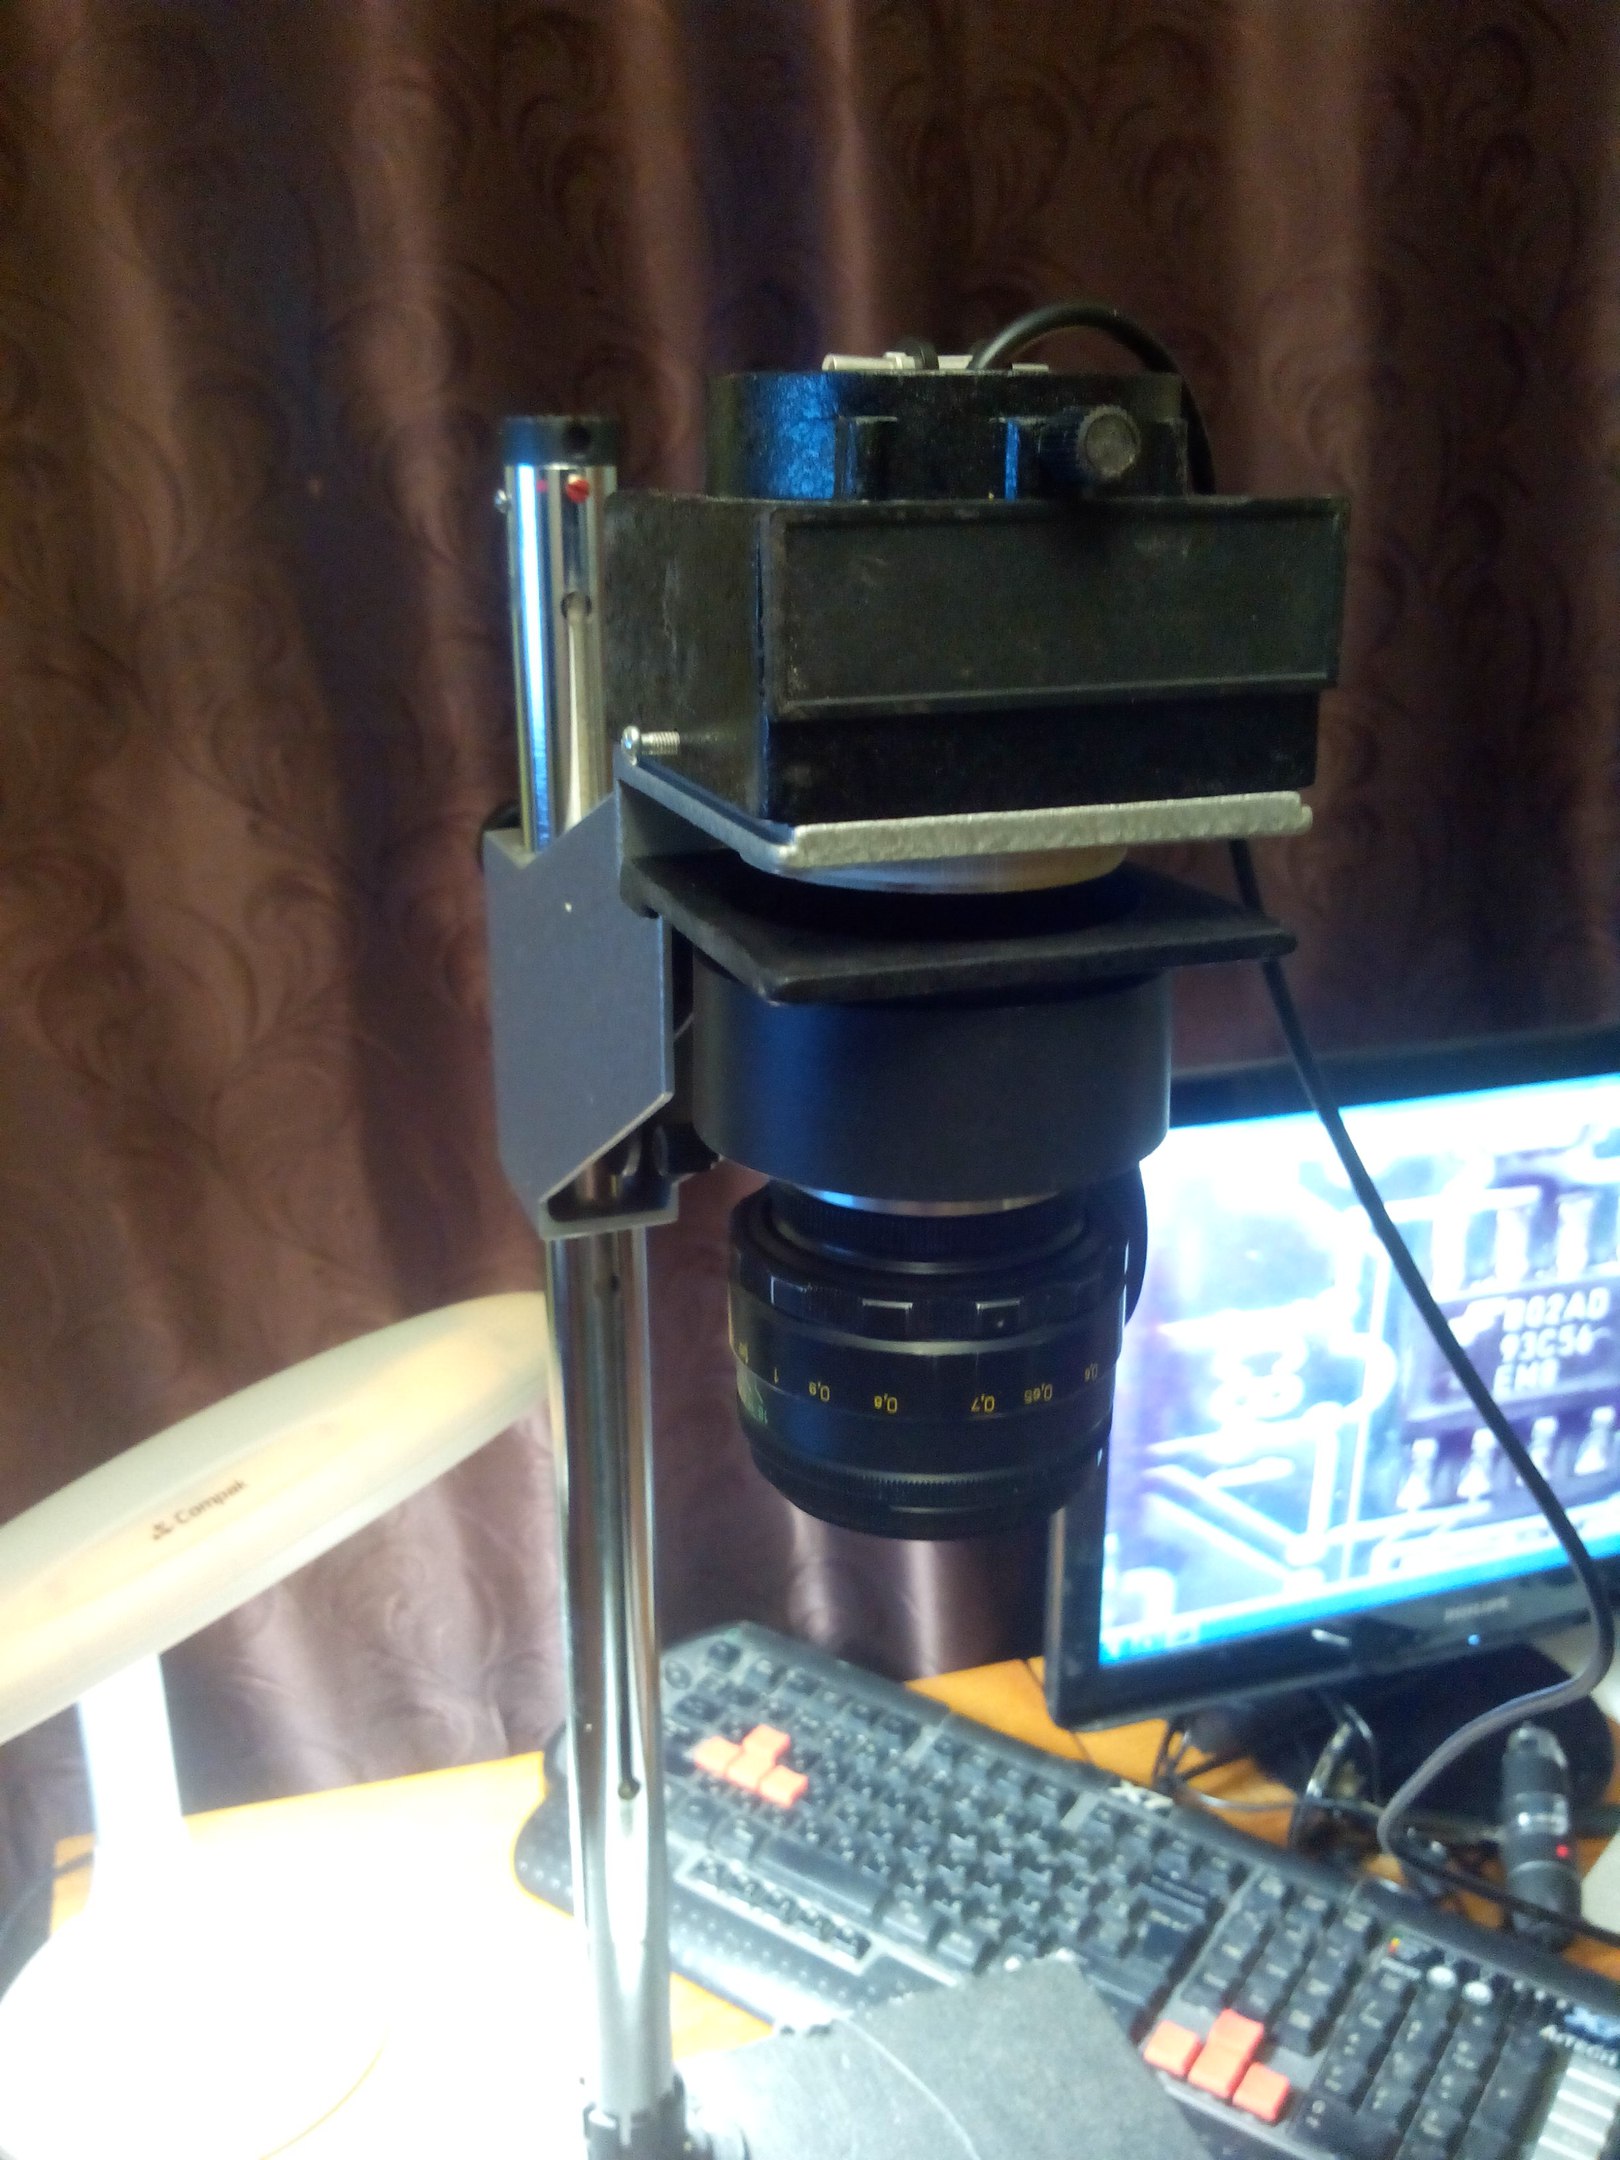 Цифровой микроскоп на станине от фотоувеличителя. | Канал технаря | Дзен